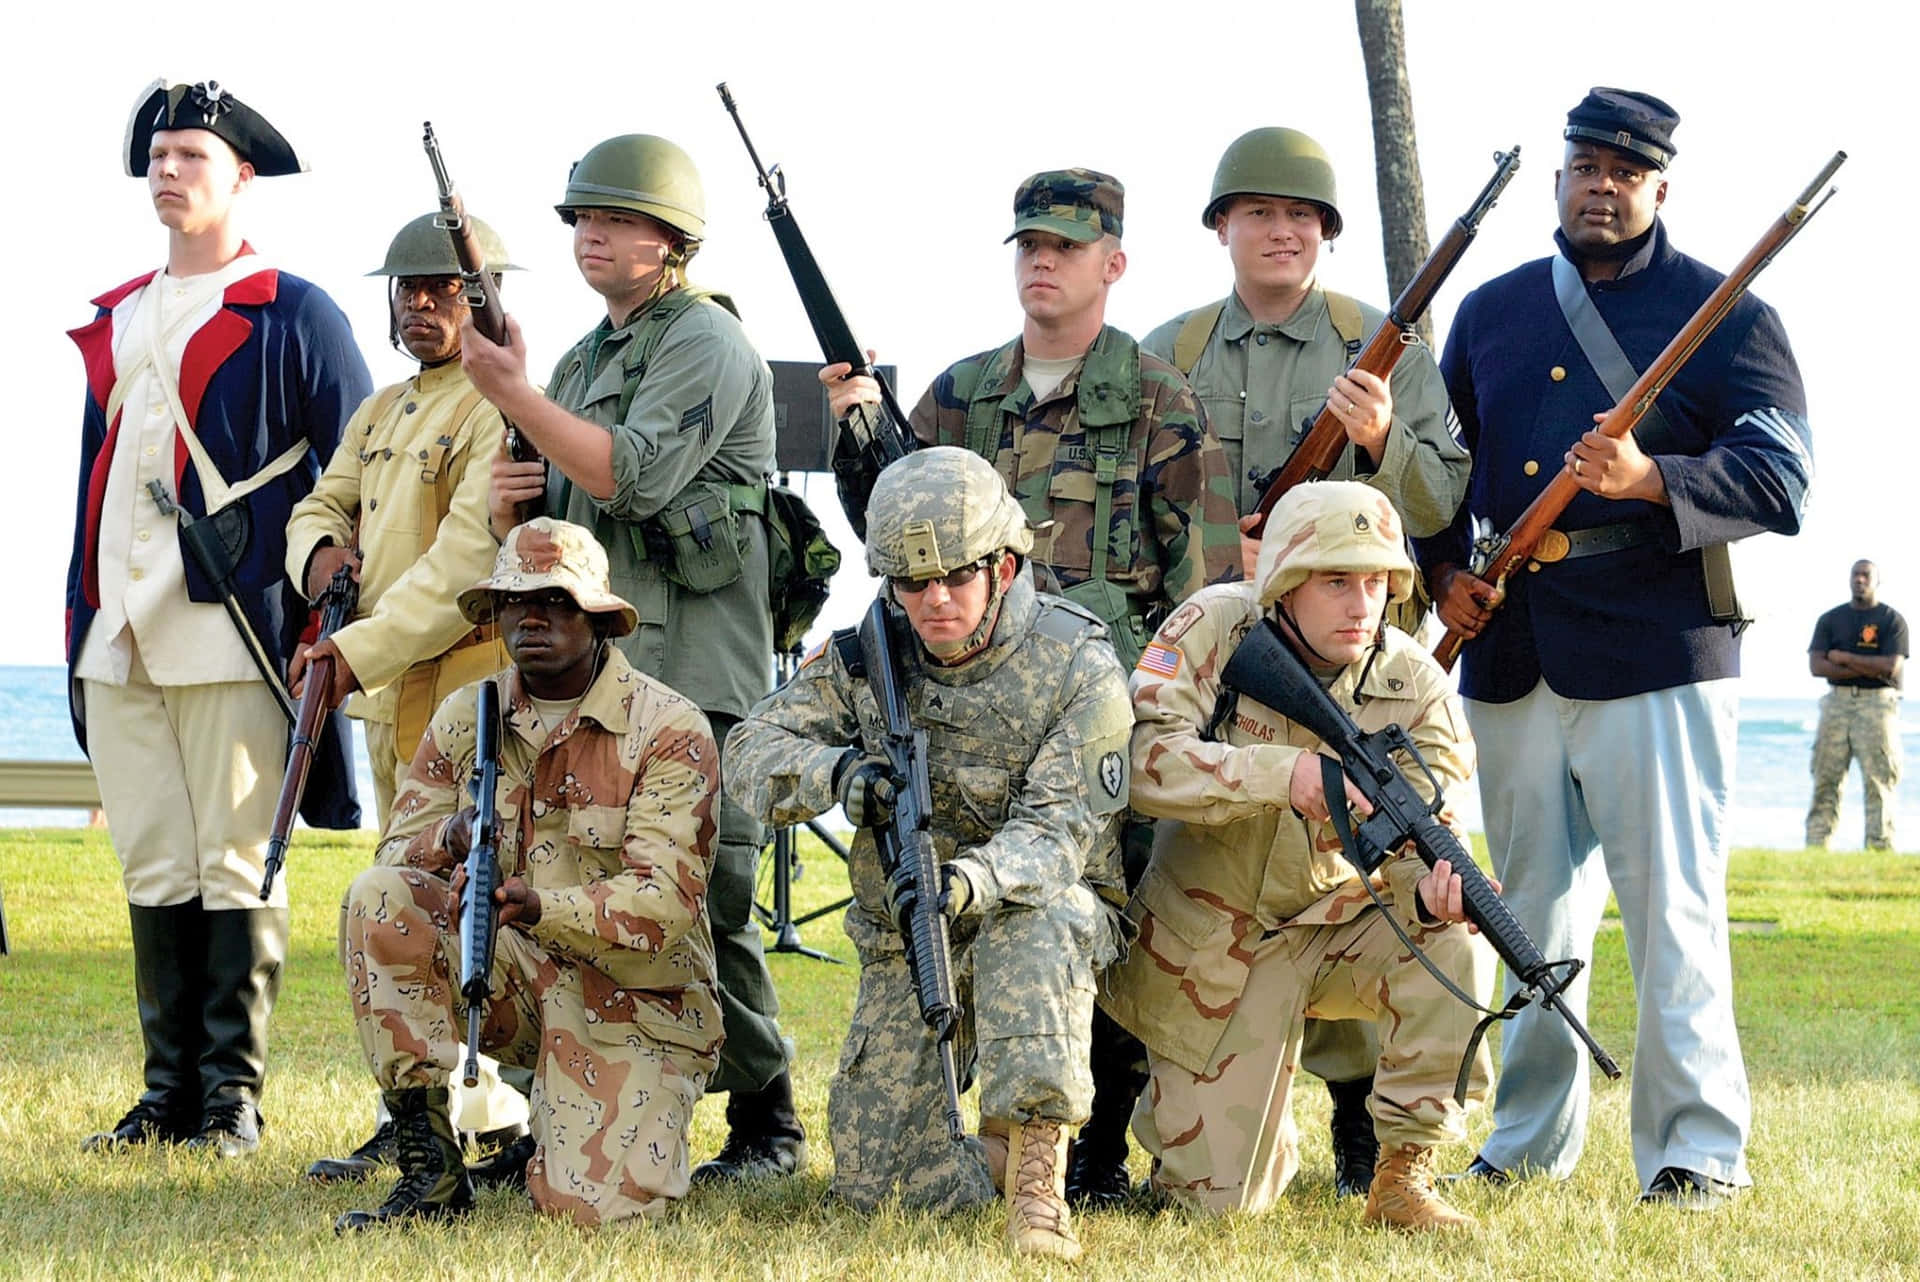 America’s heroes salute heroes in arms. Wallpaper